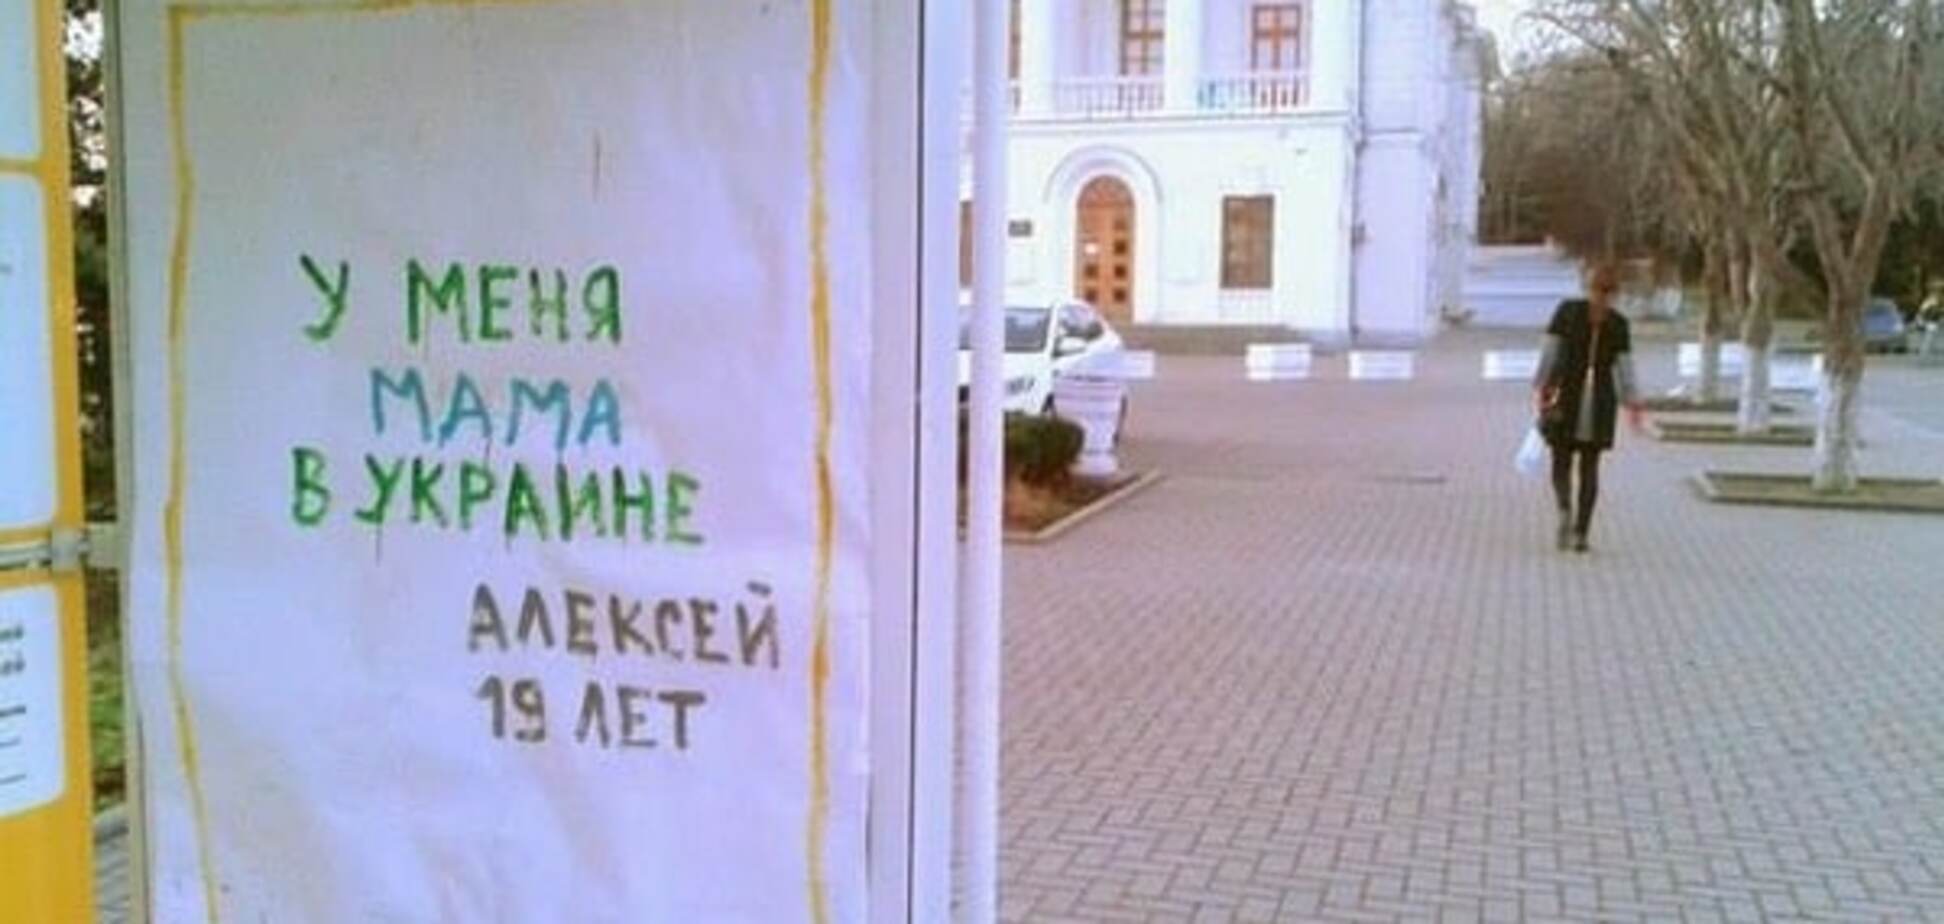 'У меня мама в Украине': в Крыму расклеили трогательные плакаты